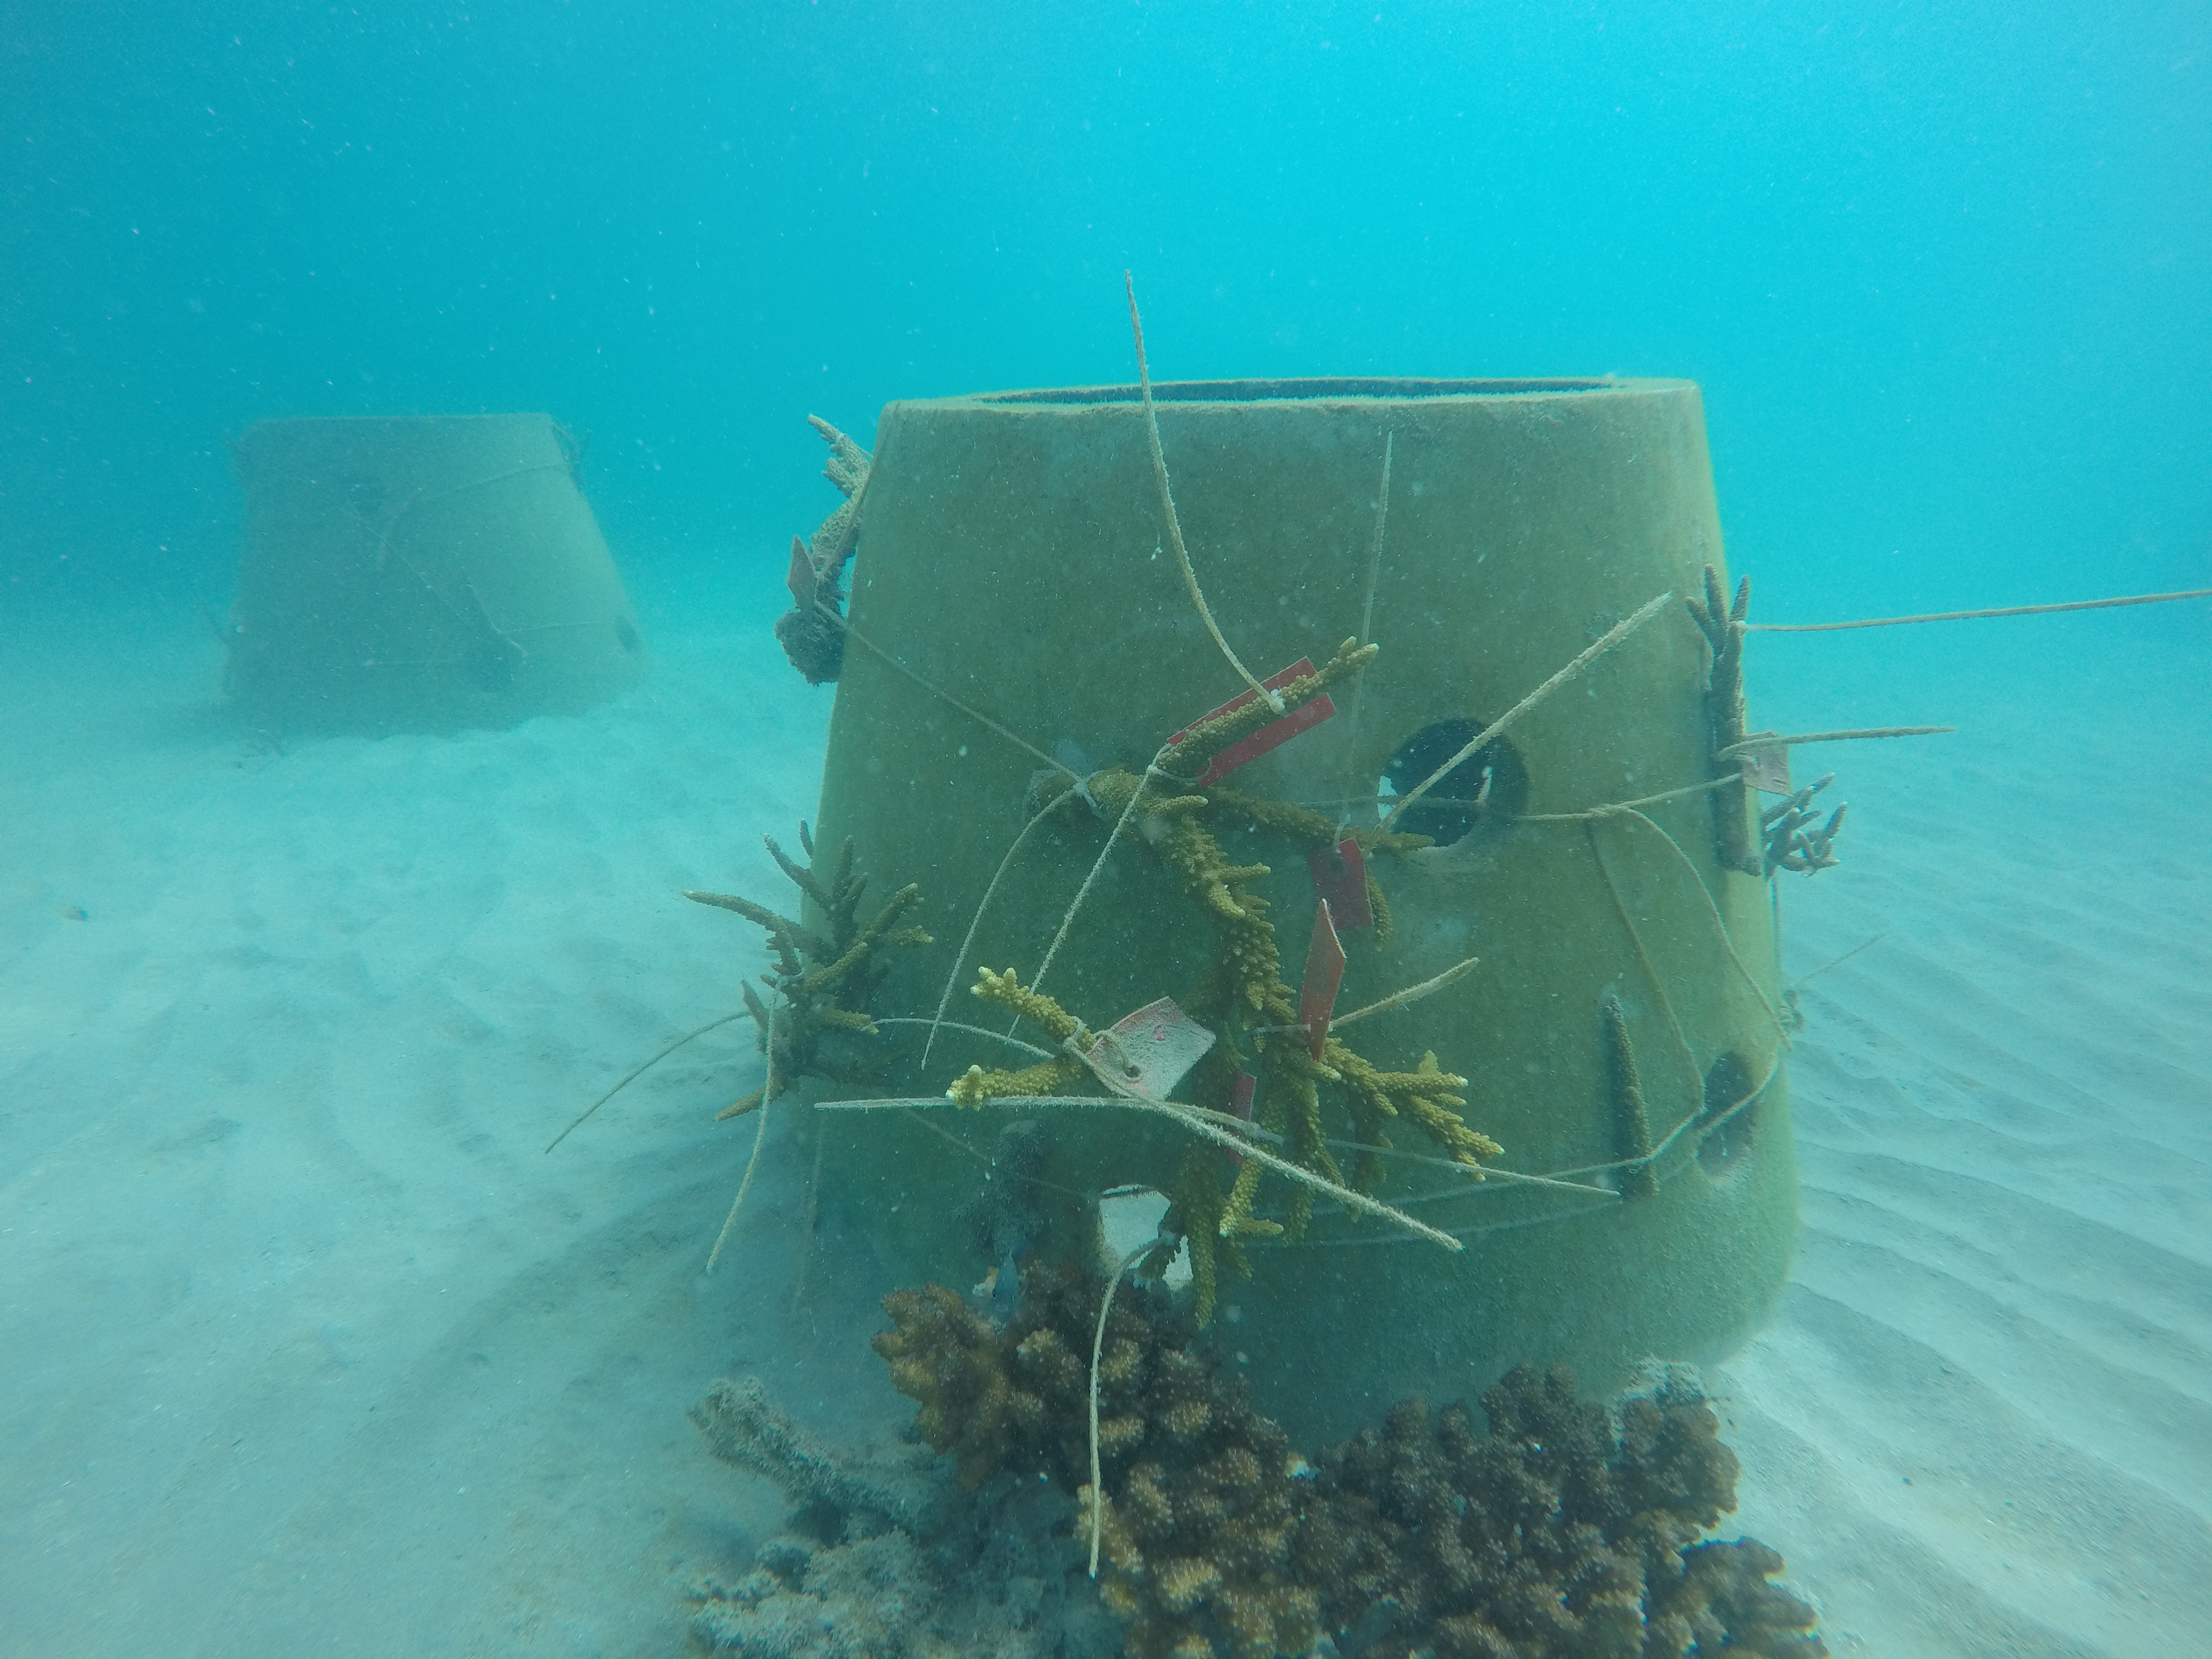 Sau hơn 3 tháng cấy ghép, đến nay tỷ lệ san hô đã phục hồi hơn 95%, san hô nhú mầm 2 - 3 cm